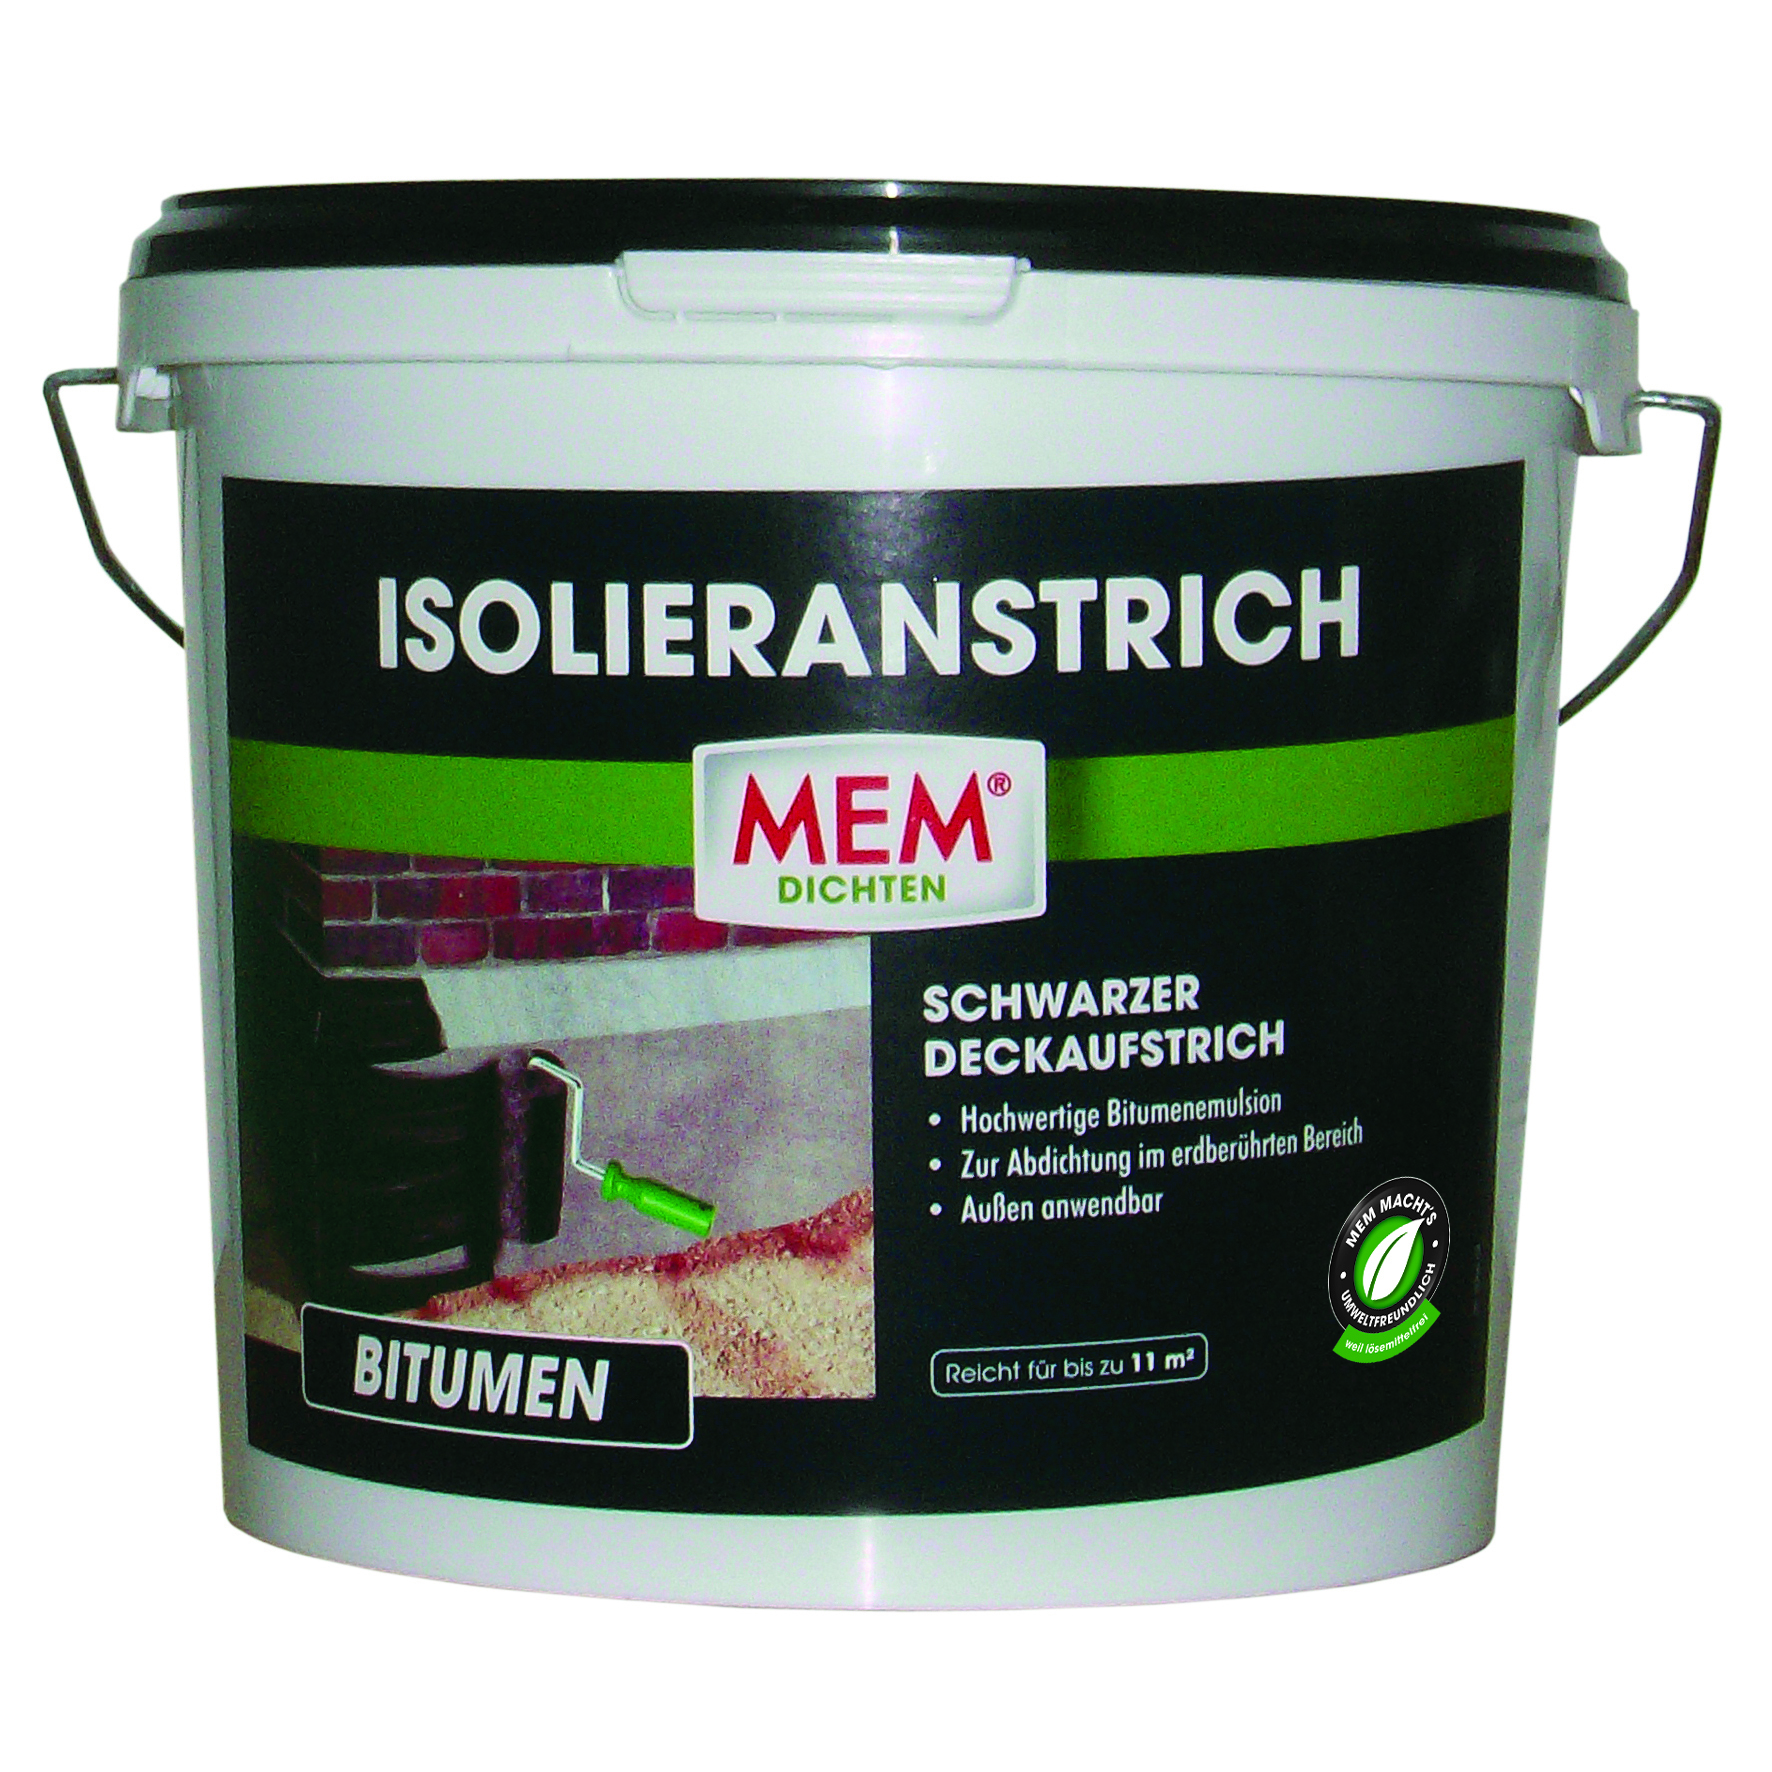 MEM Bauchemie GmbH MEM Isolieranstrich